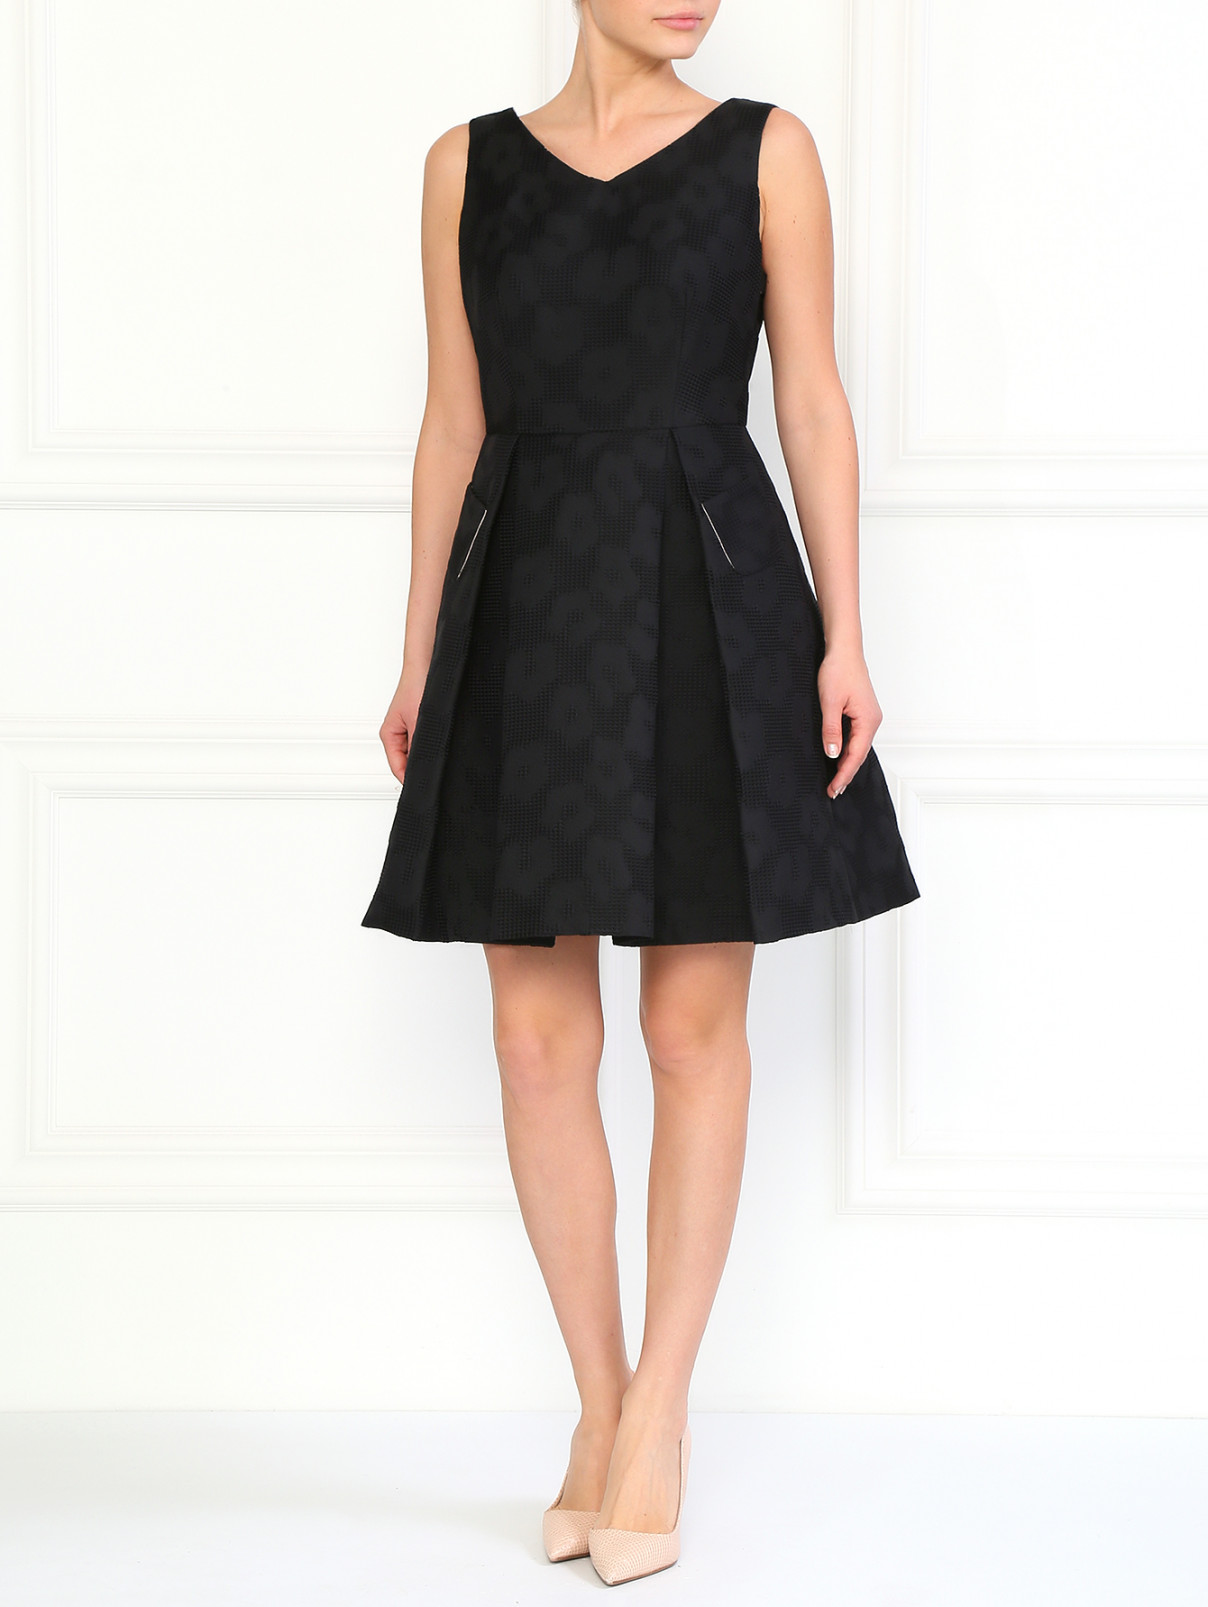 Платье с боковыми карманами Armani Collezioni  –  Модель Общий вид  – Цвет:  Черный